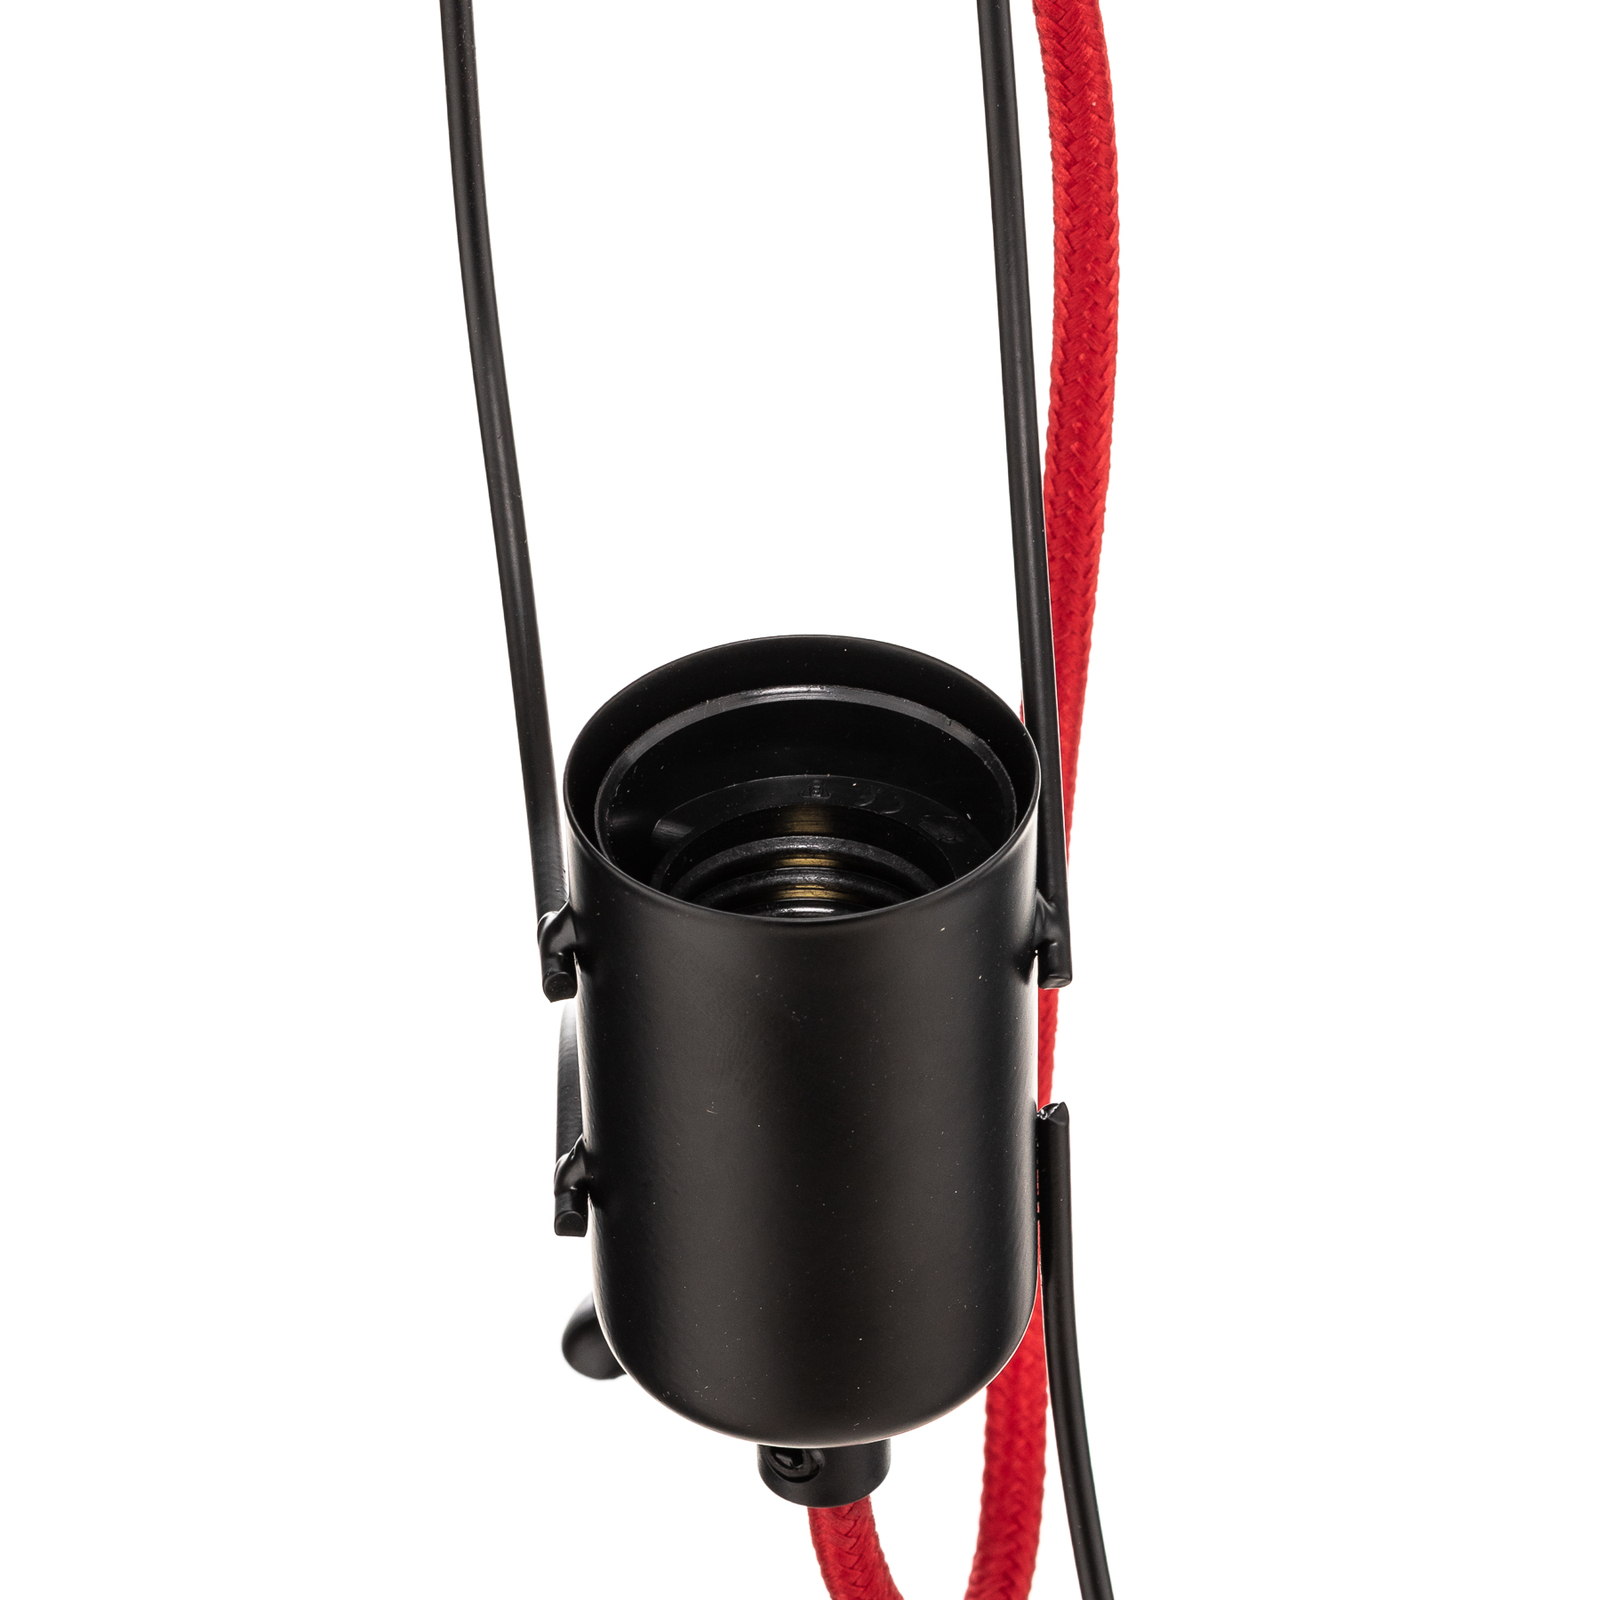 Lampa wisząca Bobi 3 w kolorze czarnym, czerwony kabel, 3-punktowa.